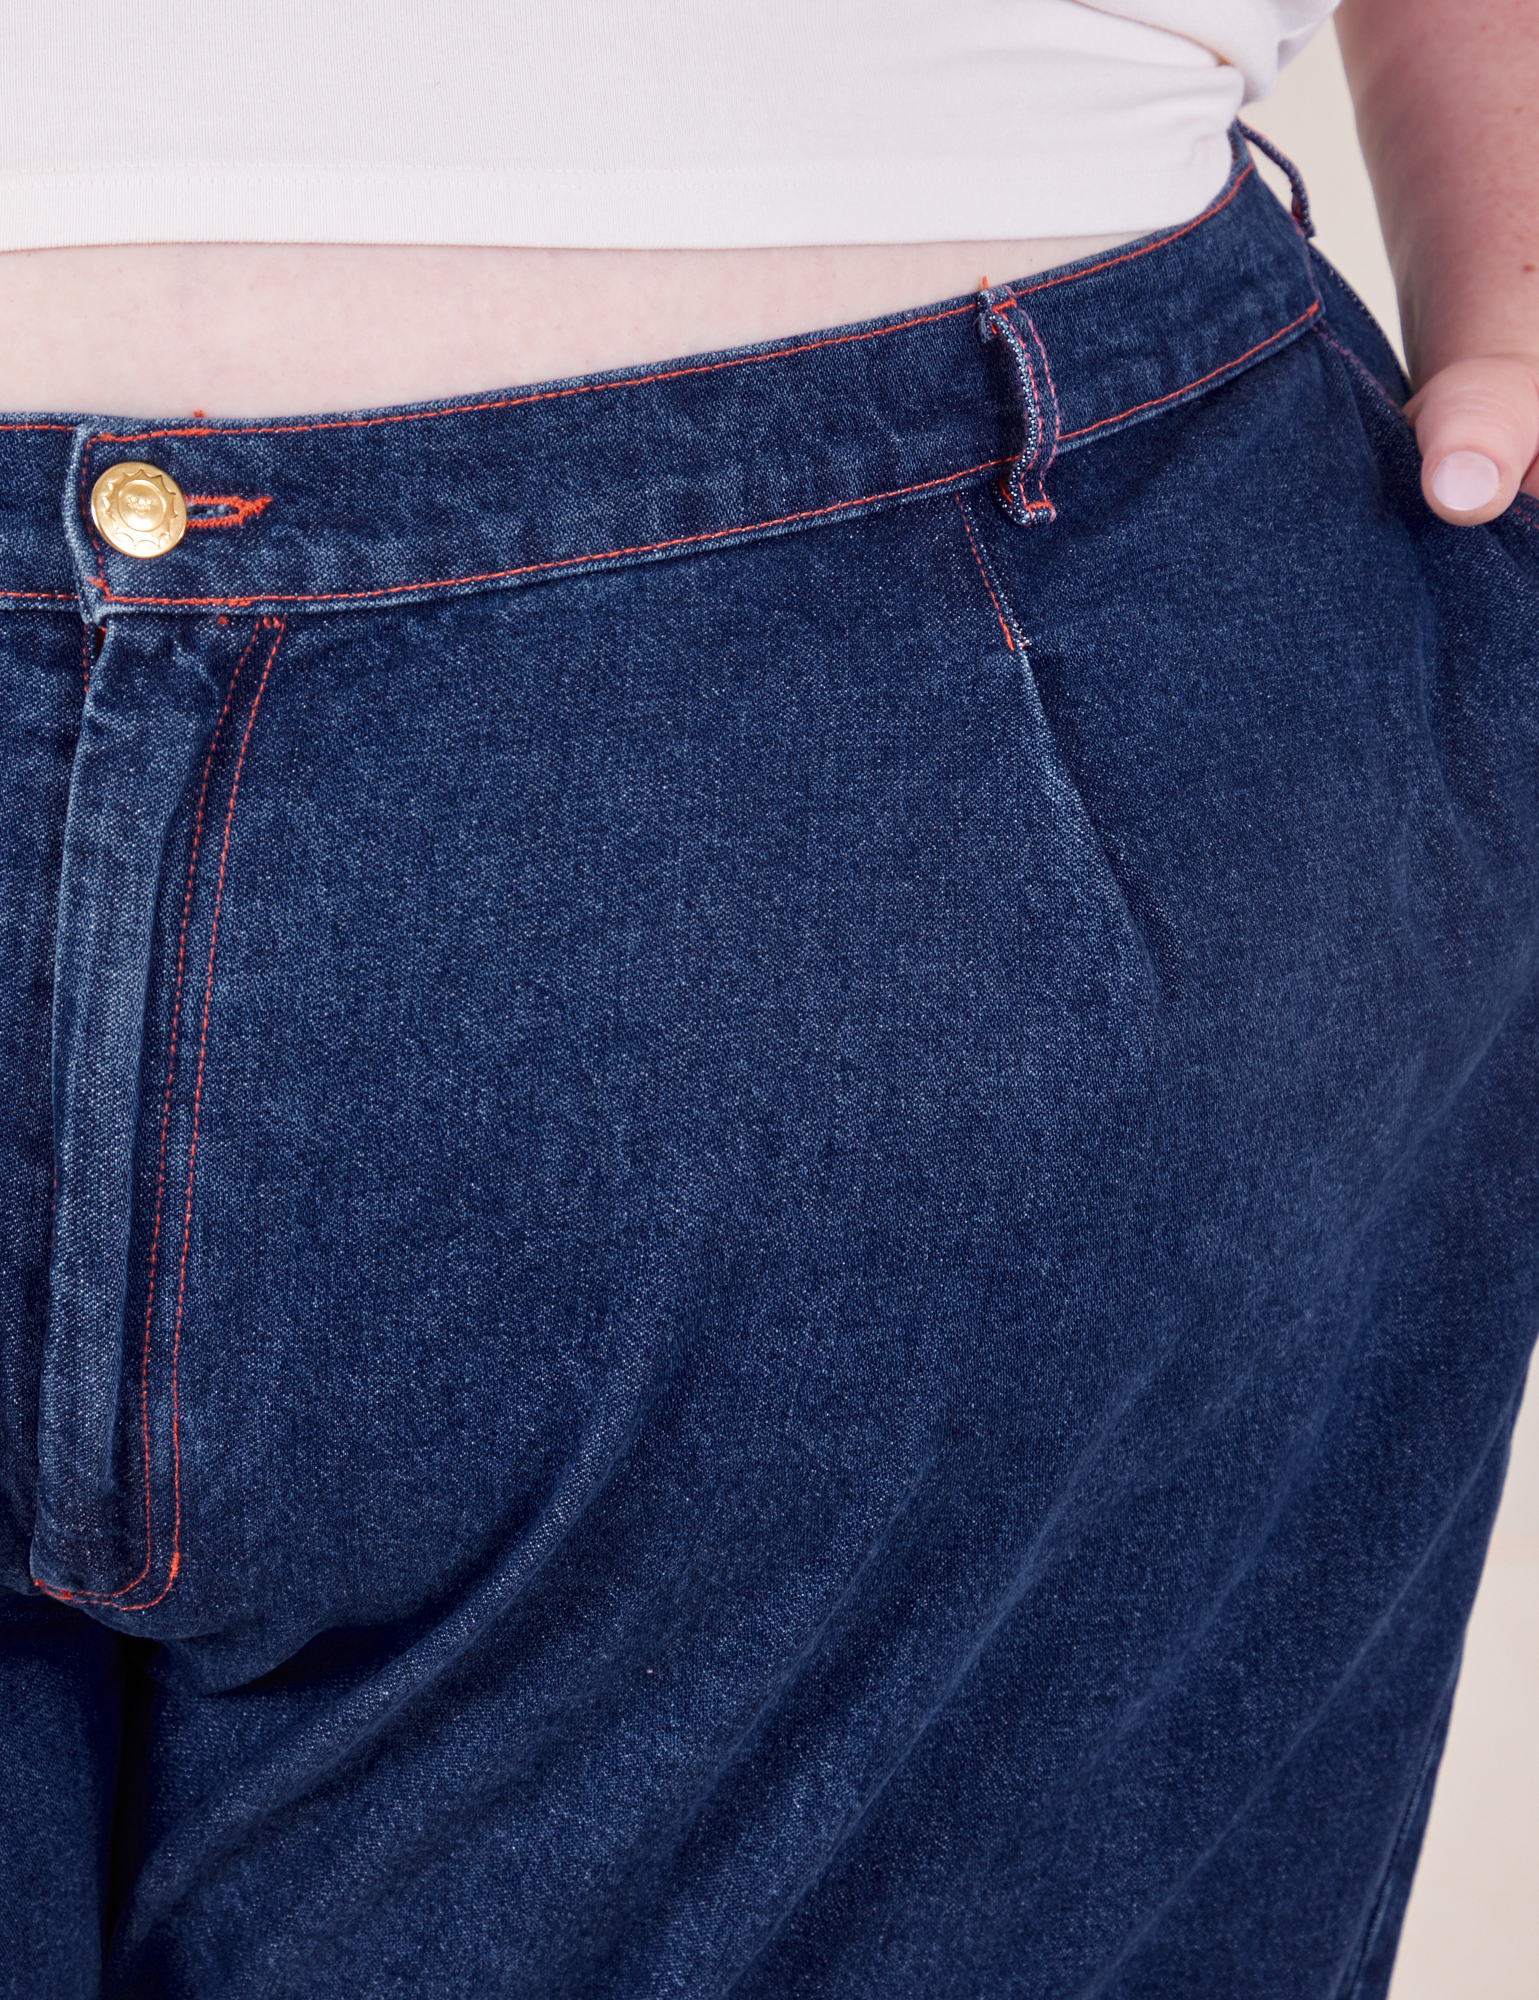 ASKK NY Denim Trouser in Indigo Linen- Bliss Boutiques